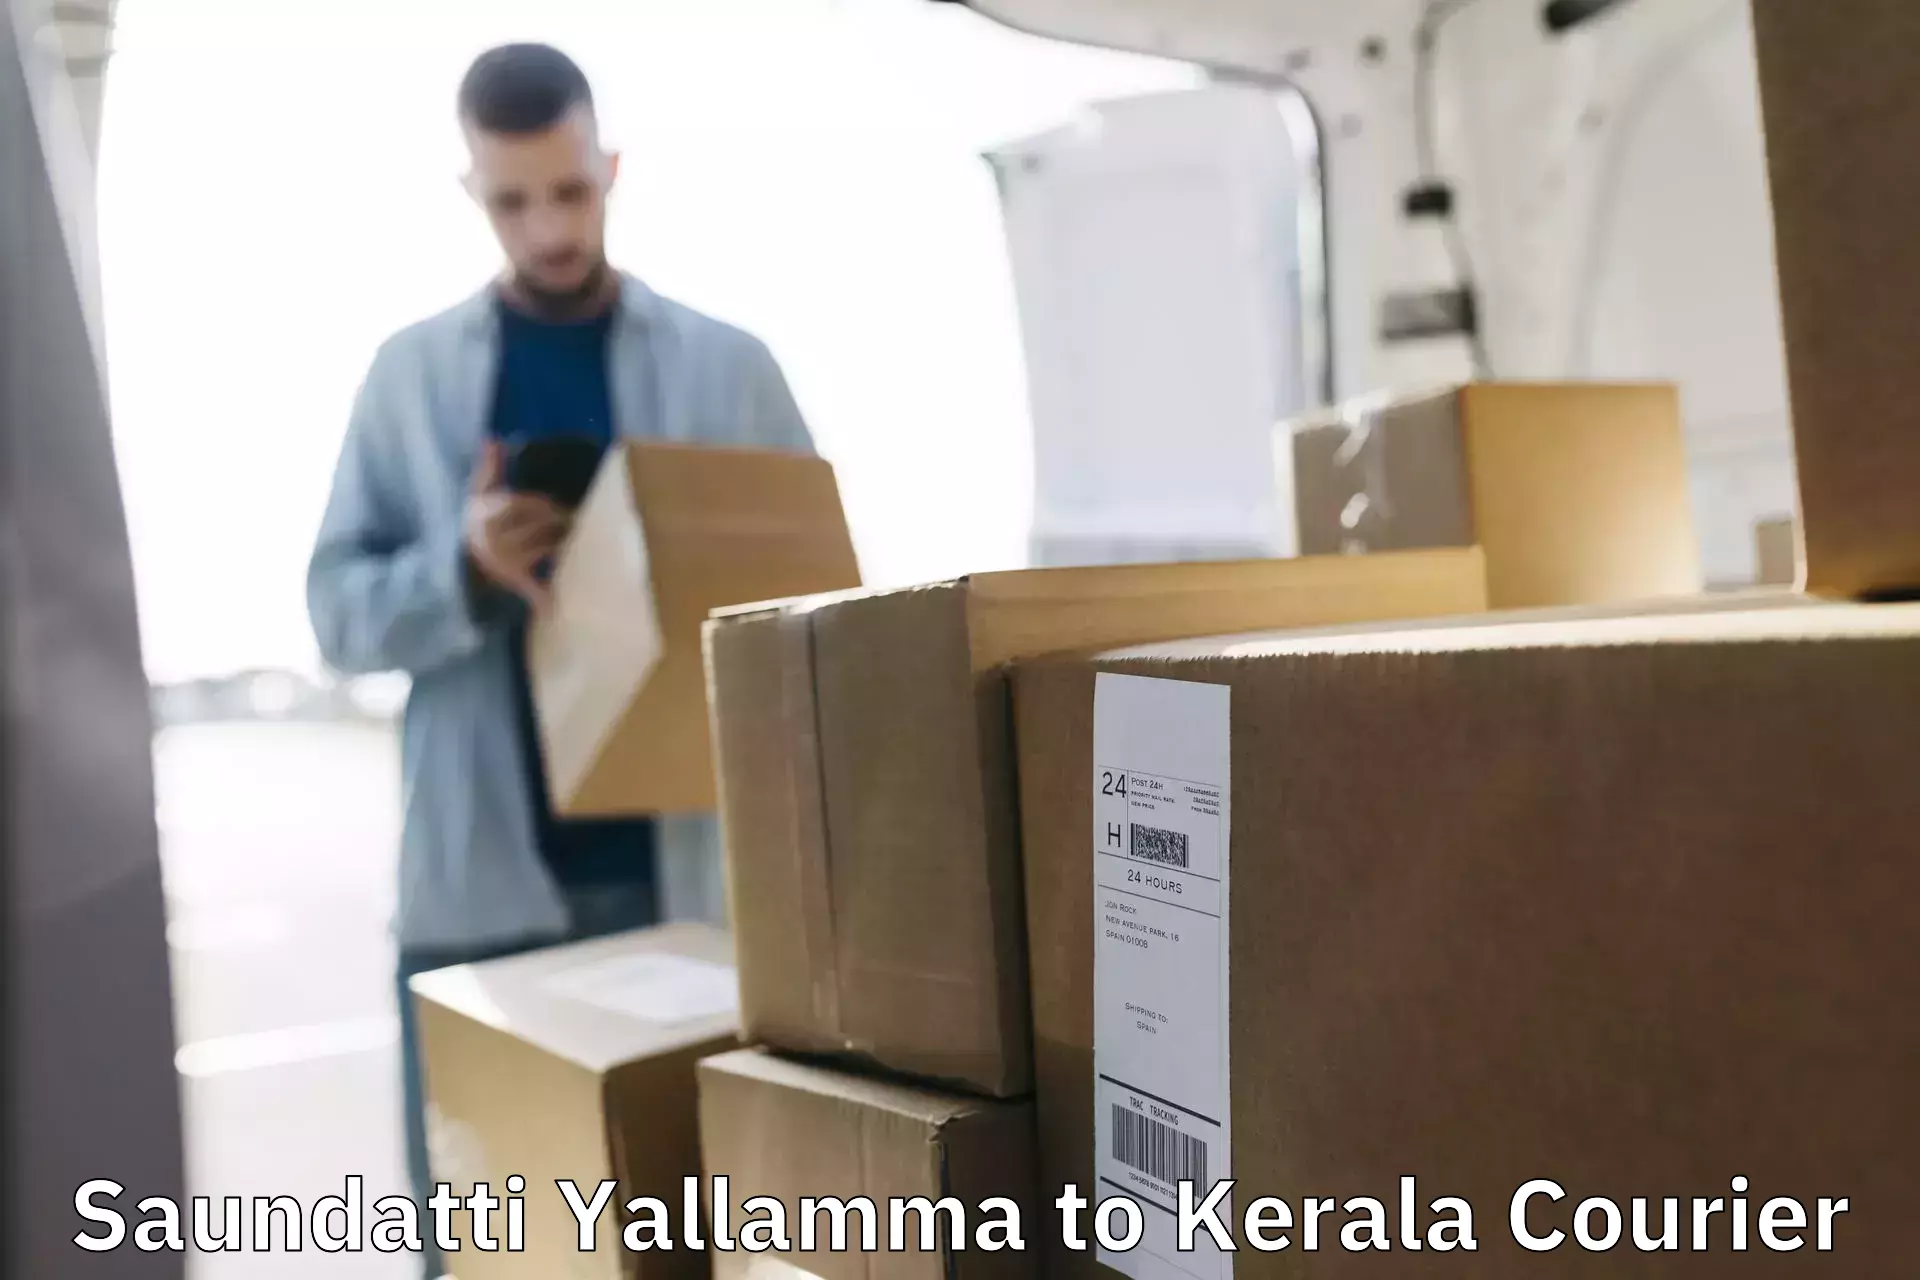 High-capacity shipping options Saundatti Yallamma to Kalluvathukkal